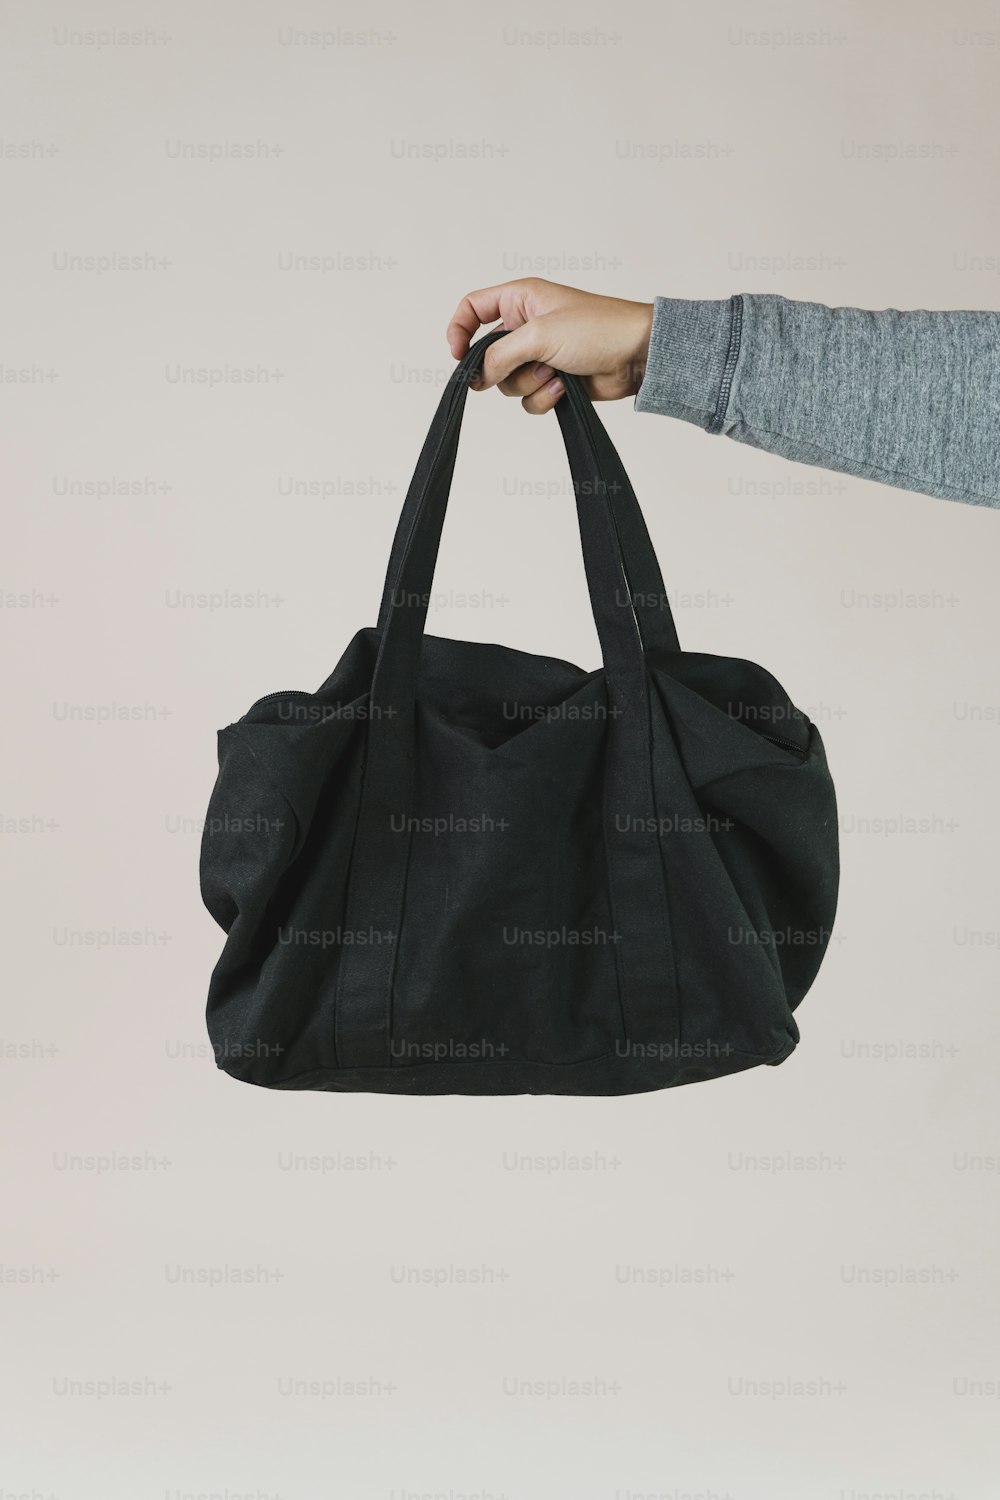 uma pessoa segurando um saco preto na mão